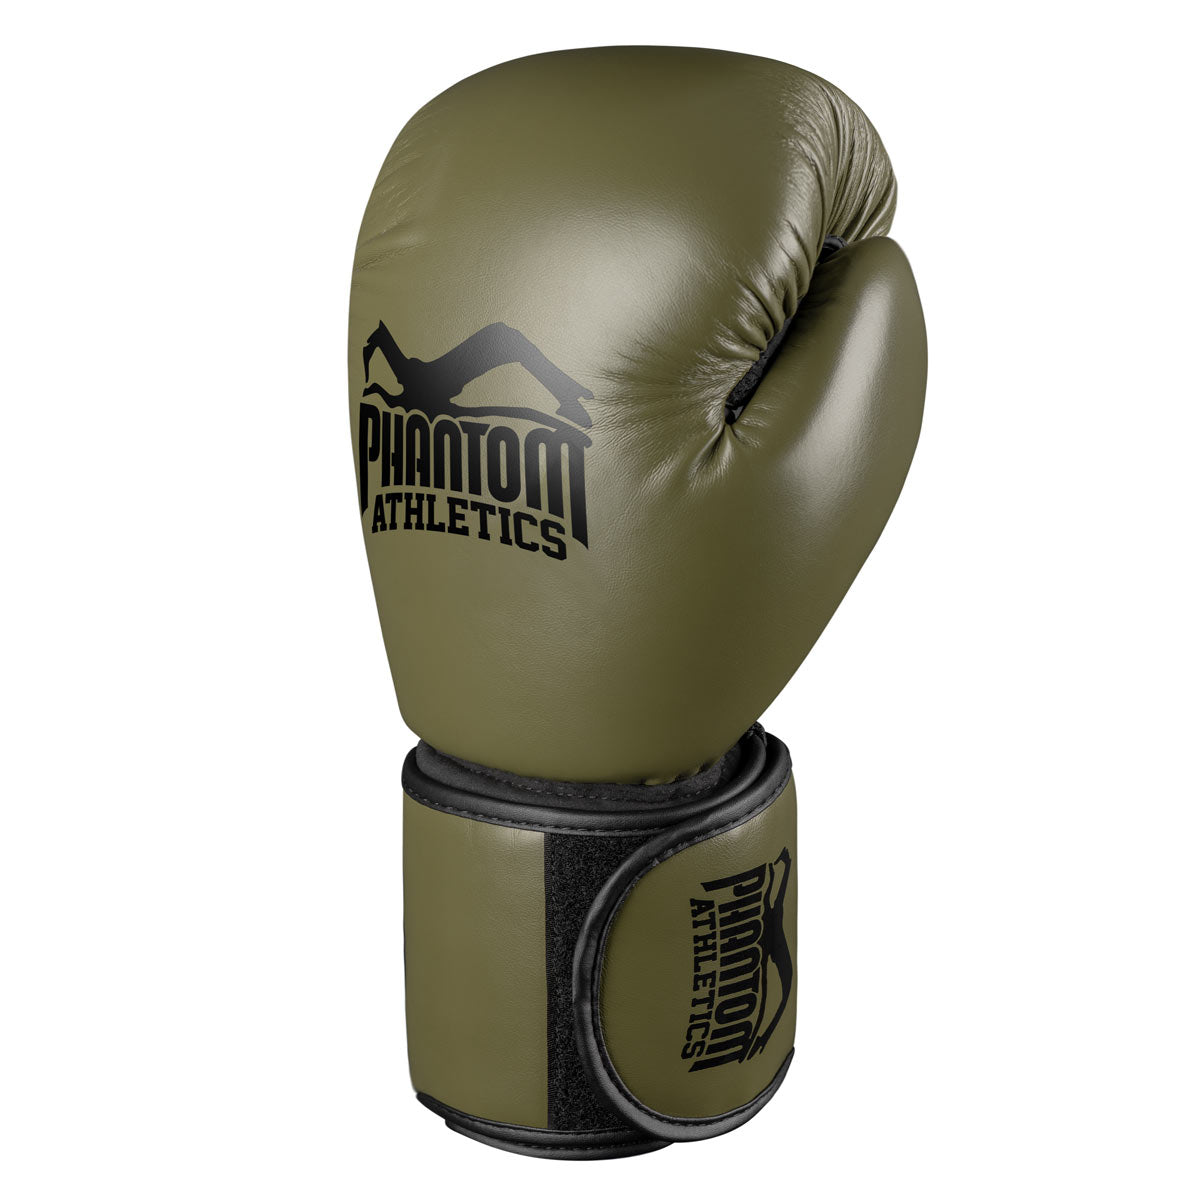 Die Phantom Elite ATF Boxhandschuhe für dein Kampfsport Training. Profi Boxhandschuhe mit fantastischer Polsterung, Mesh Einsatz im Innenhandbereich sowie einem überragenden Handgelenkssupport.  Linker Handschuh.